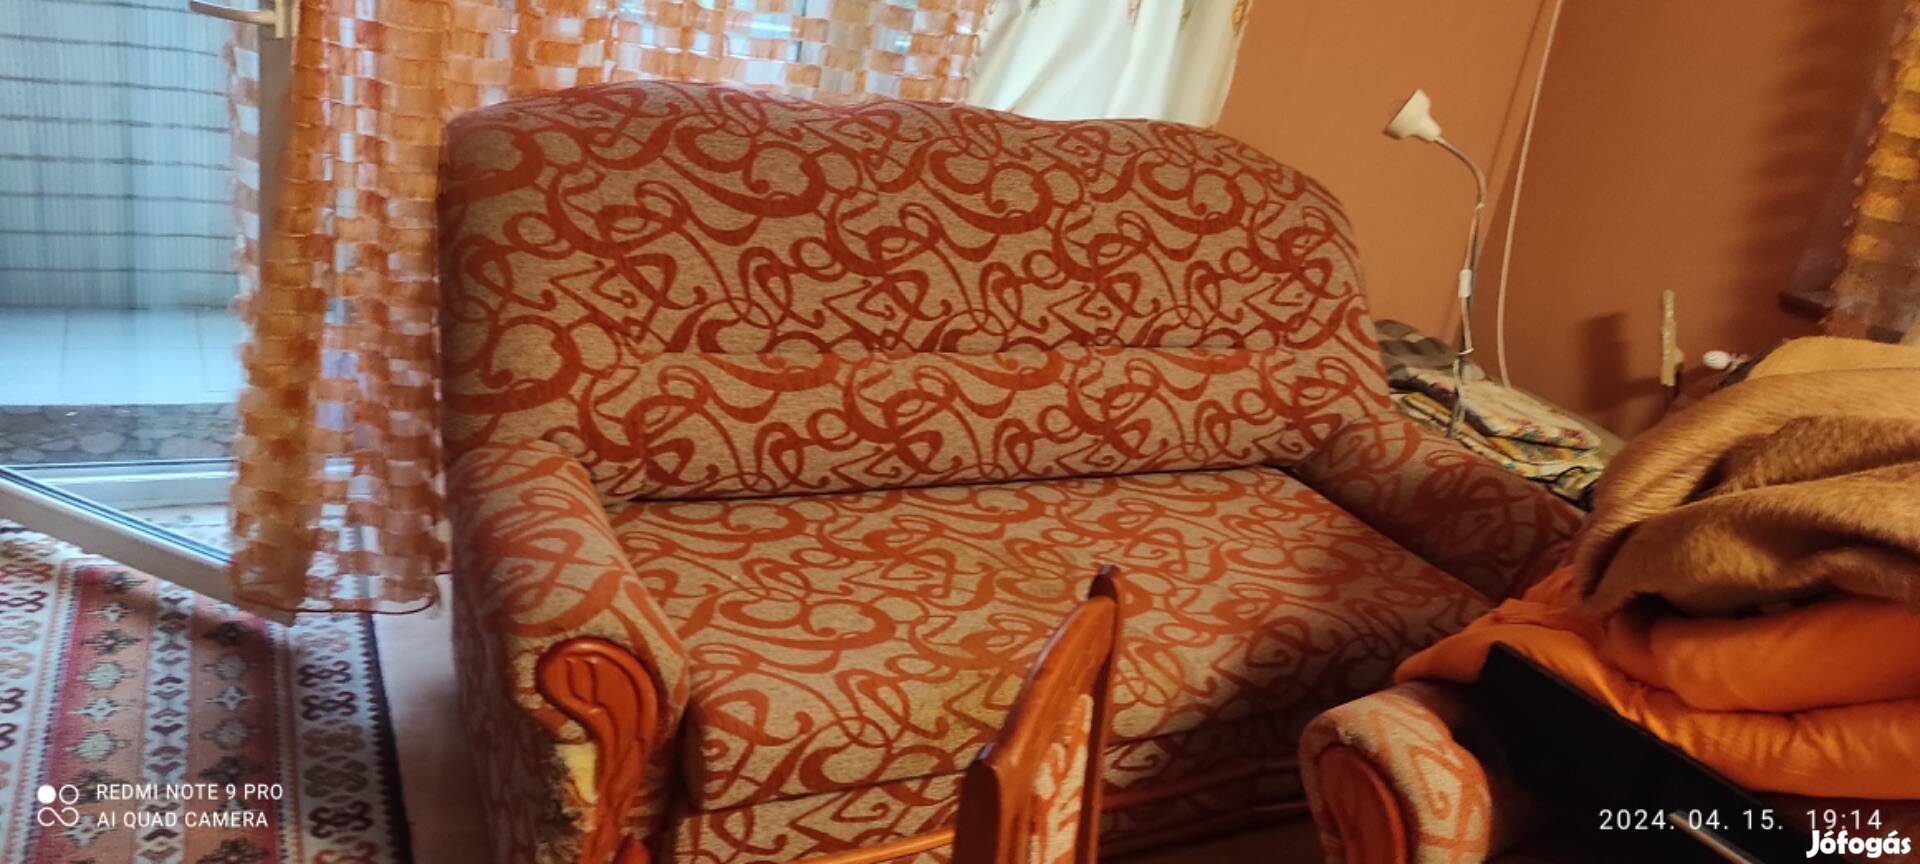 Használt fotel és kanapé